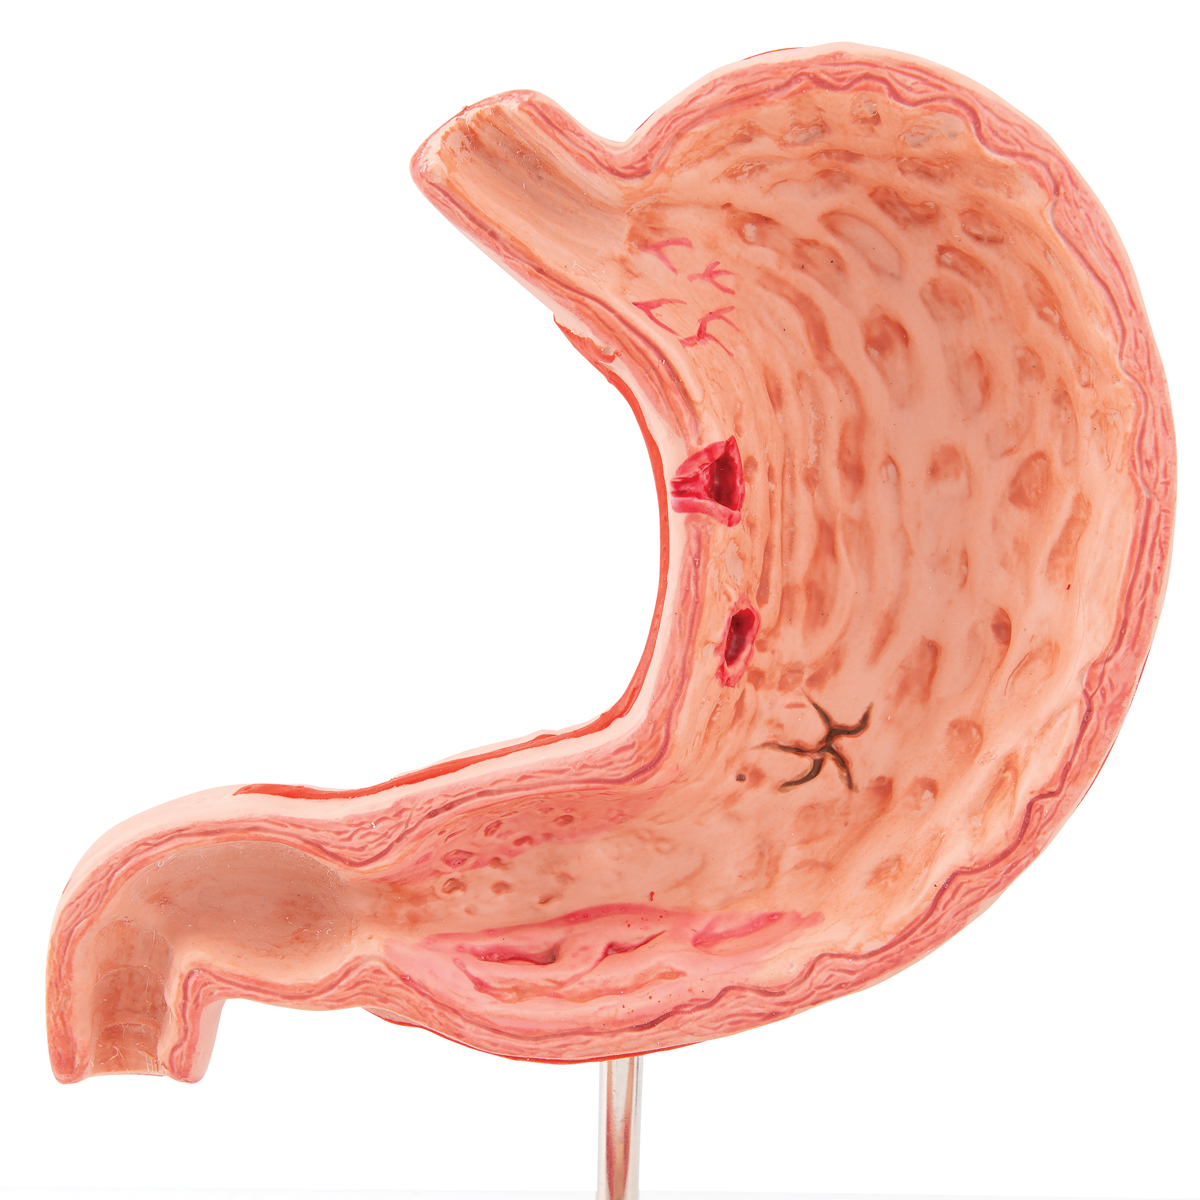 Покажи картинки желудка. Желудок анатомия человека. Модель желудка.